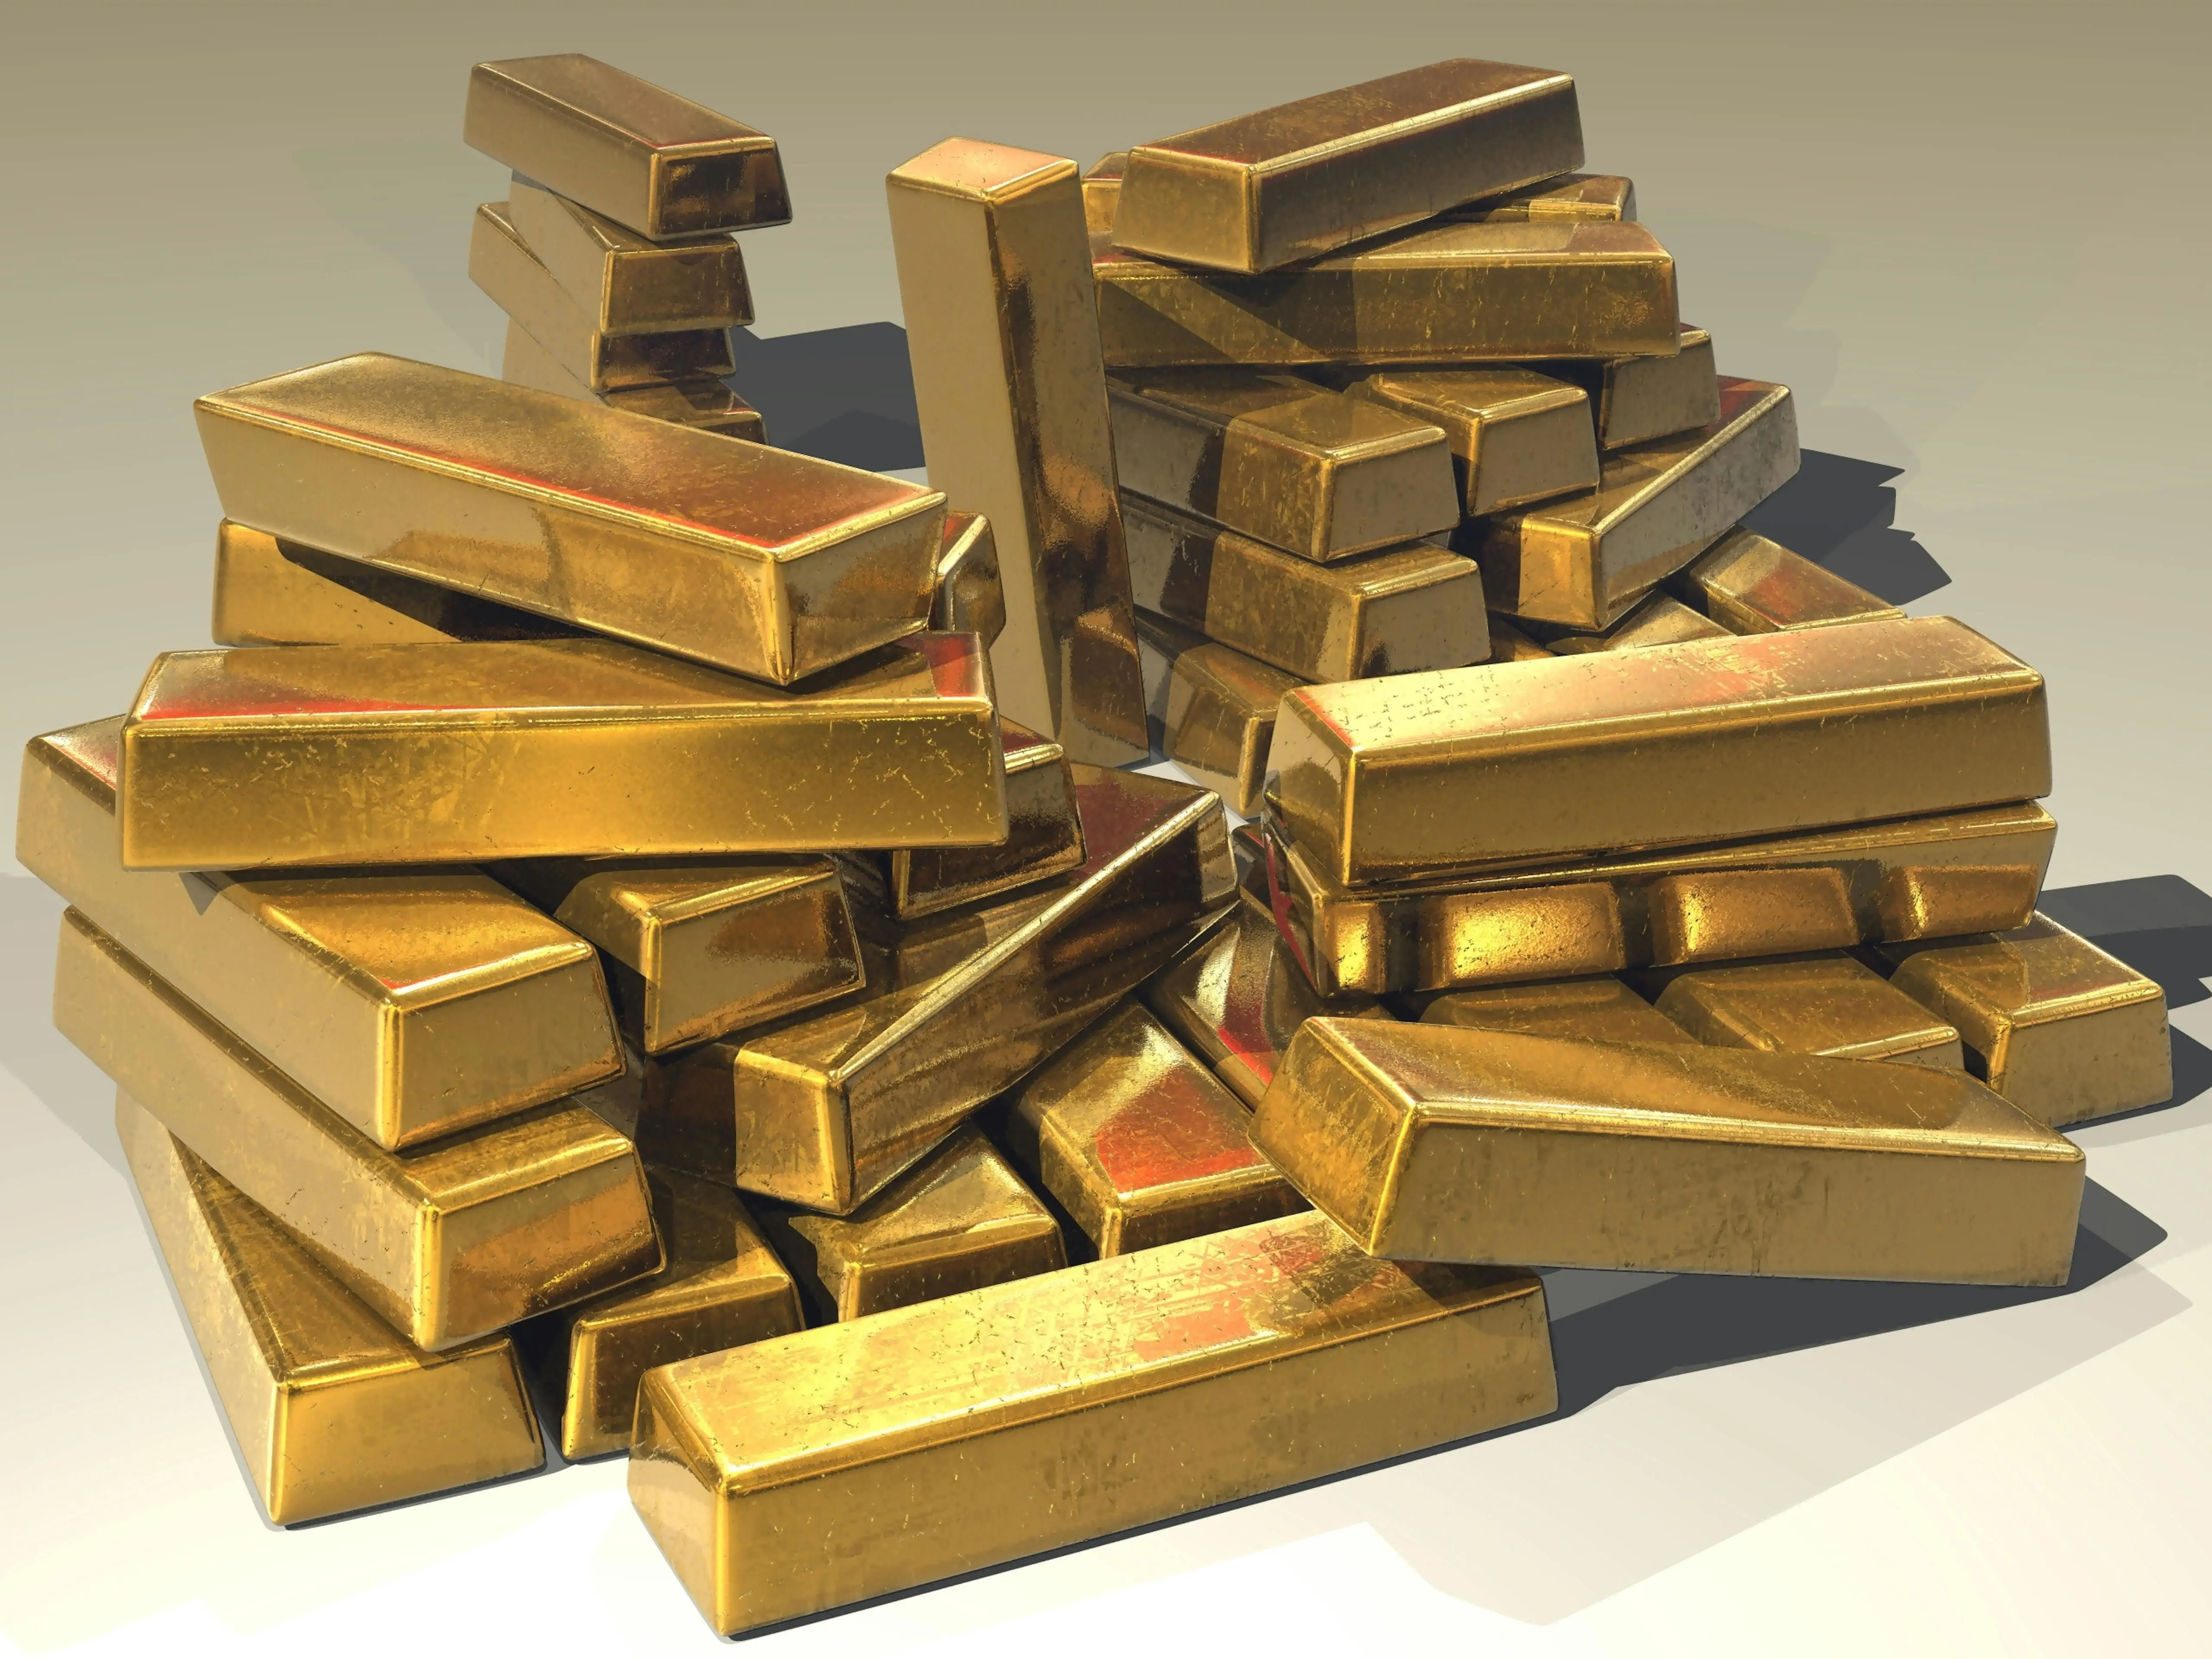 Збільшення попиту на золото: як це позначилося на впливі Центрального банку